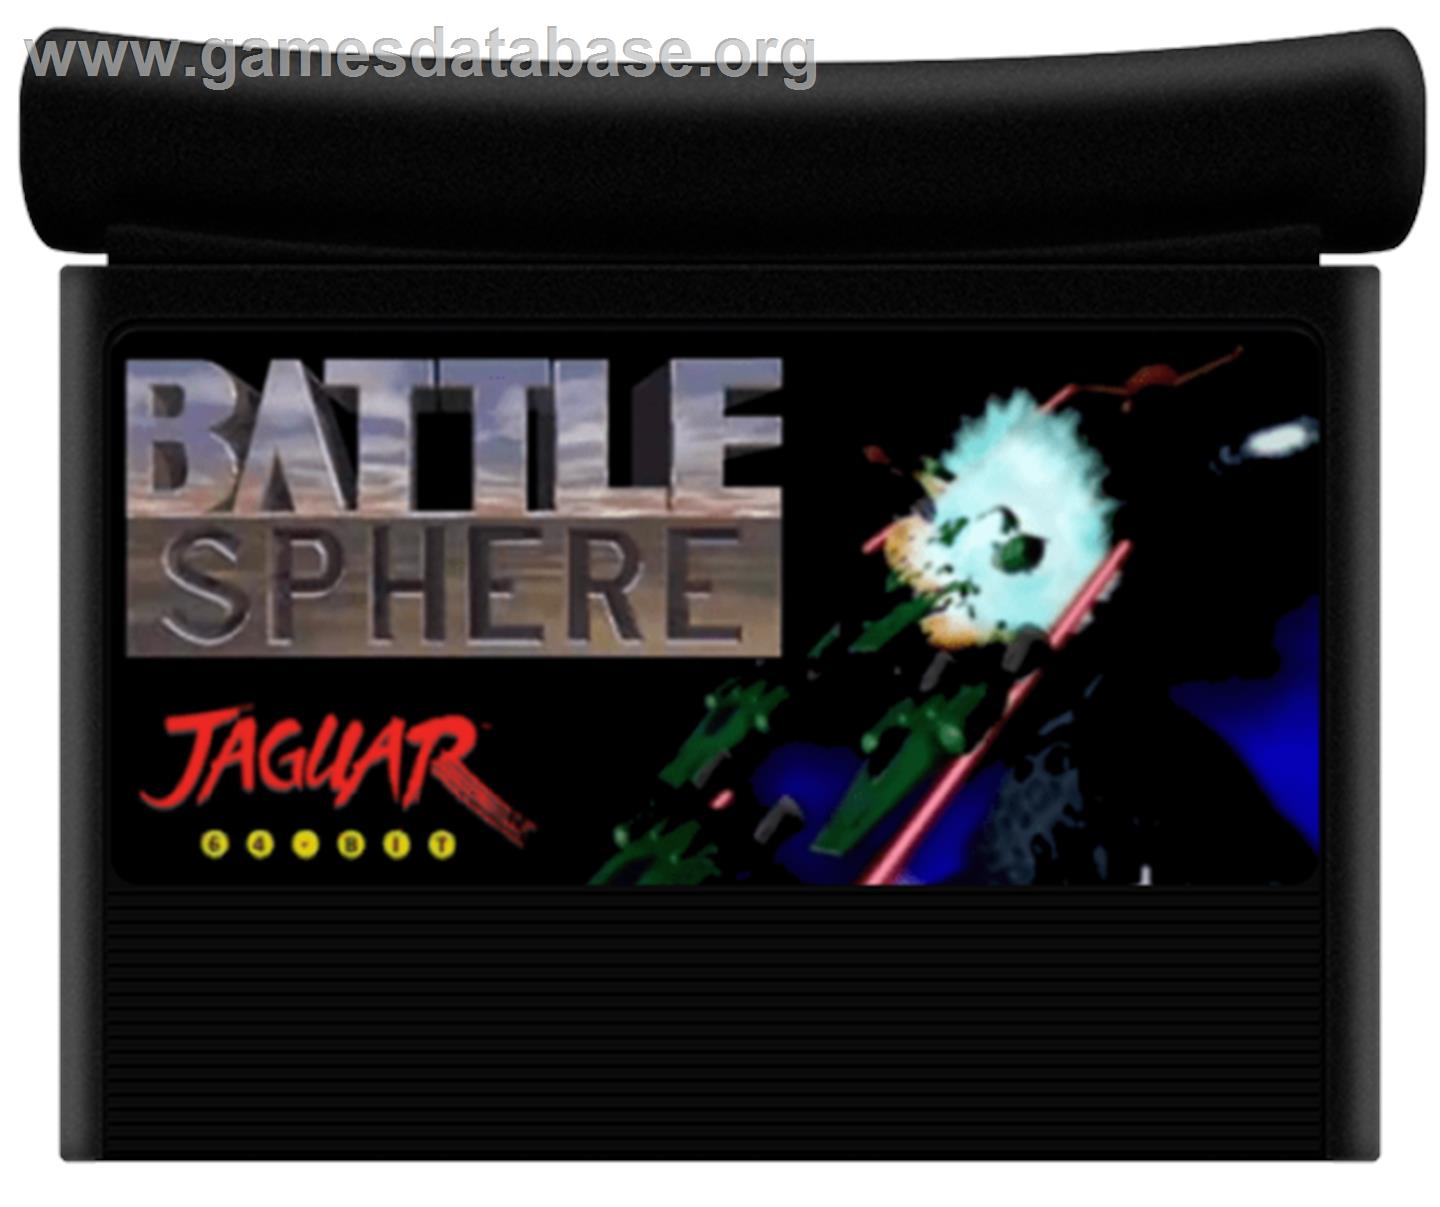 BattleSphere - Atari Jaguar - Artwork - Cartridge